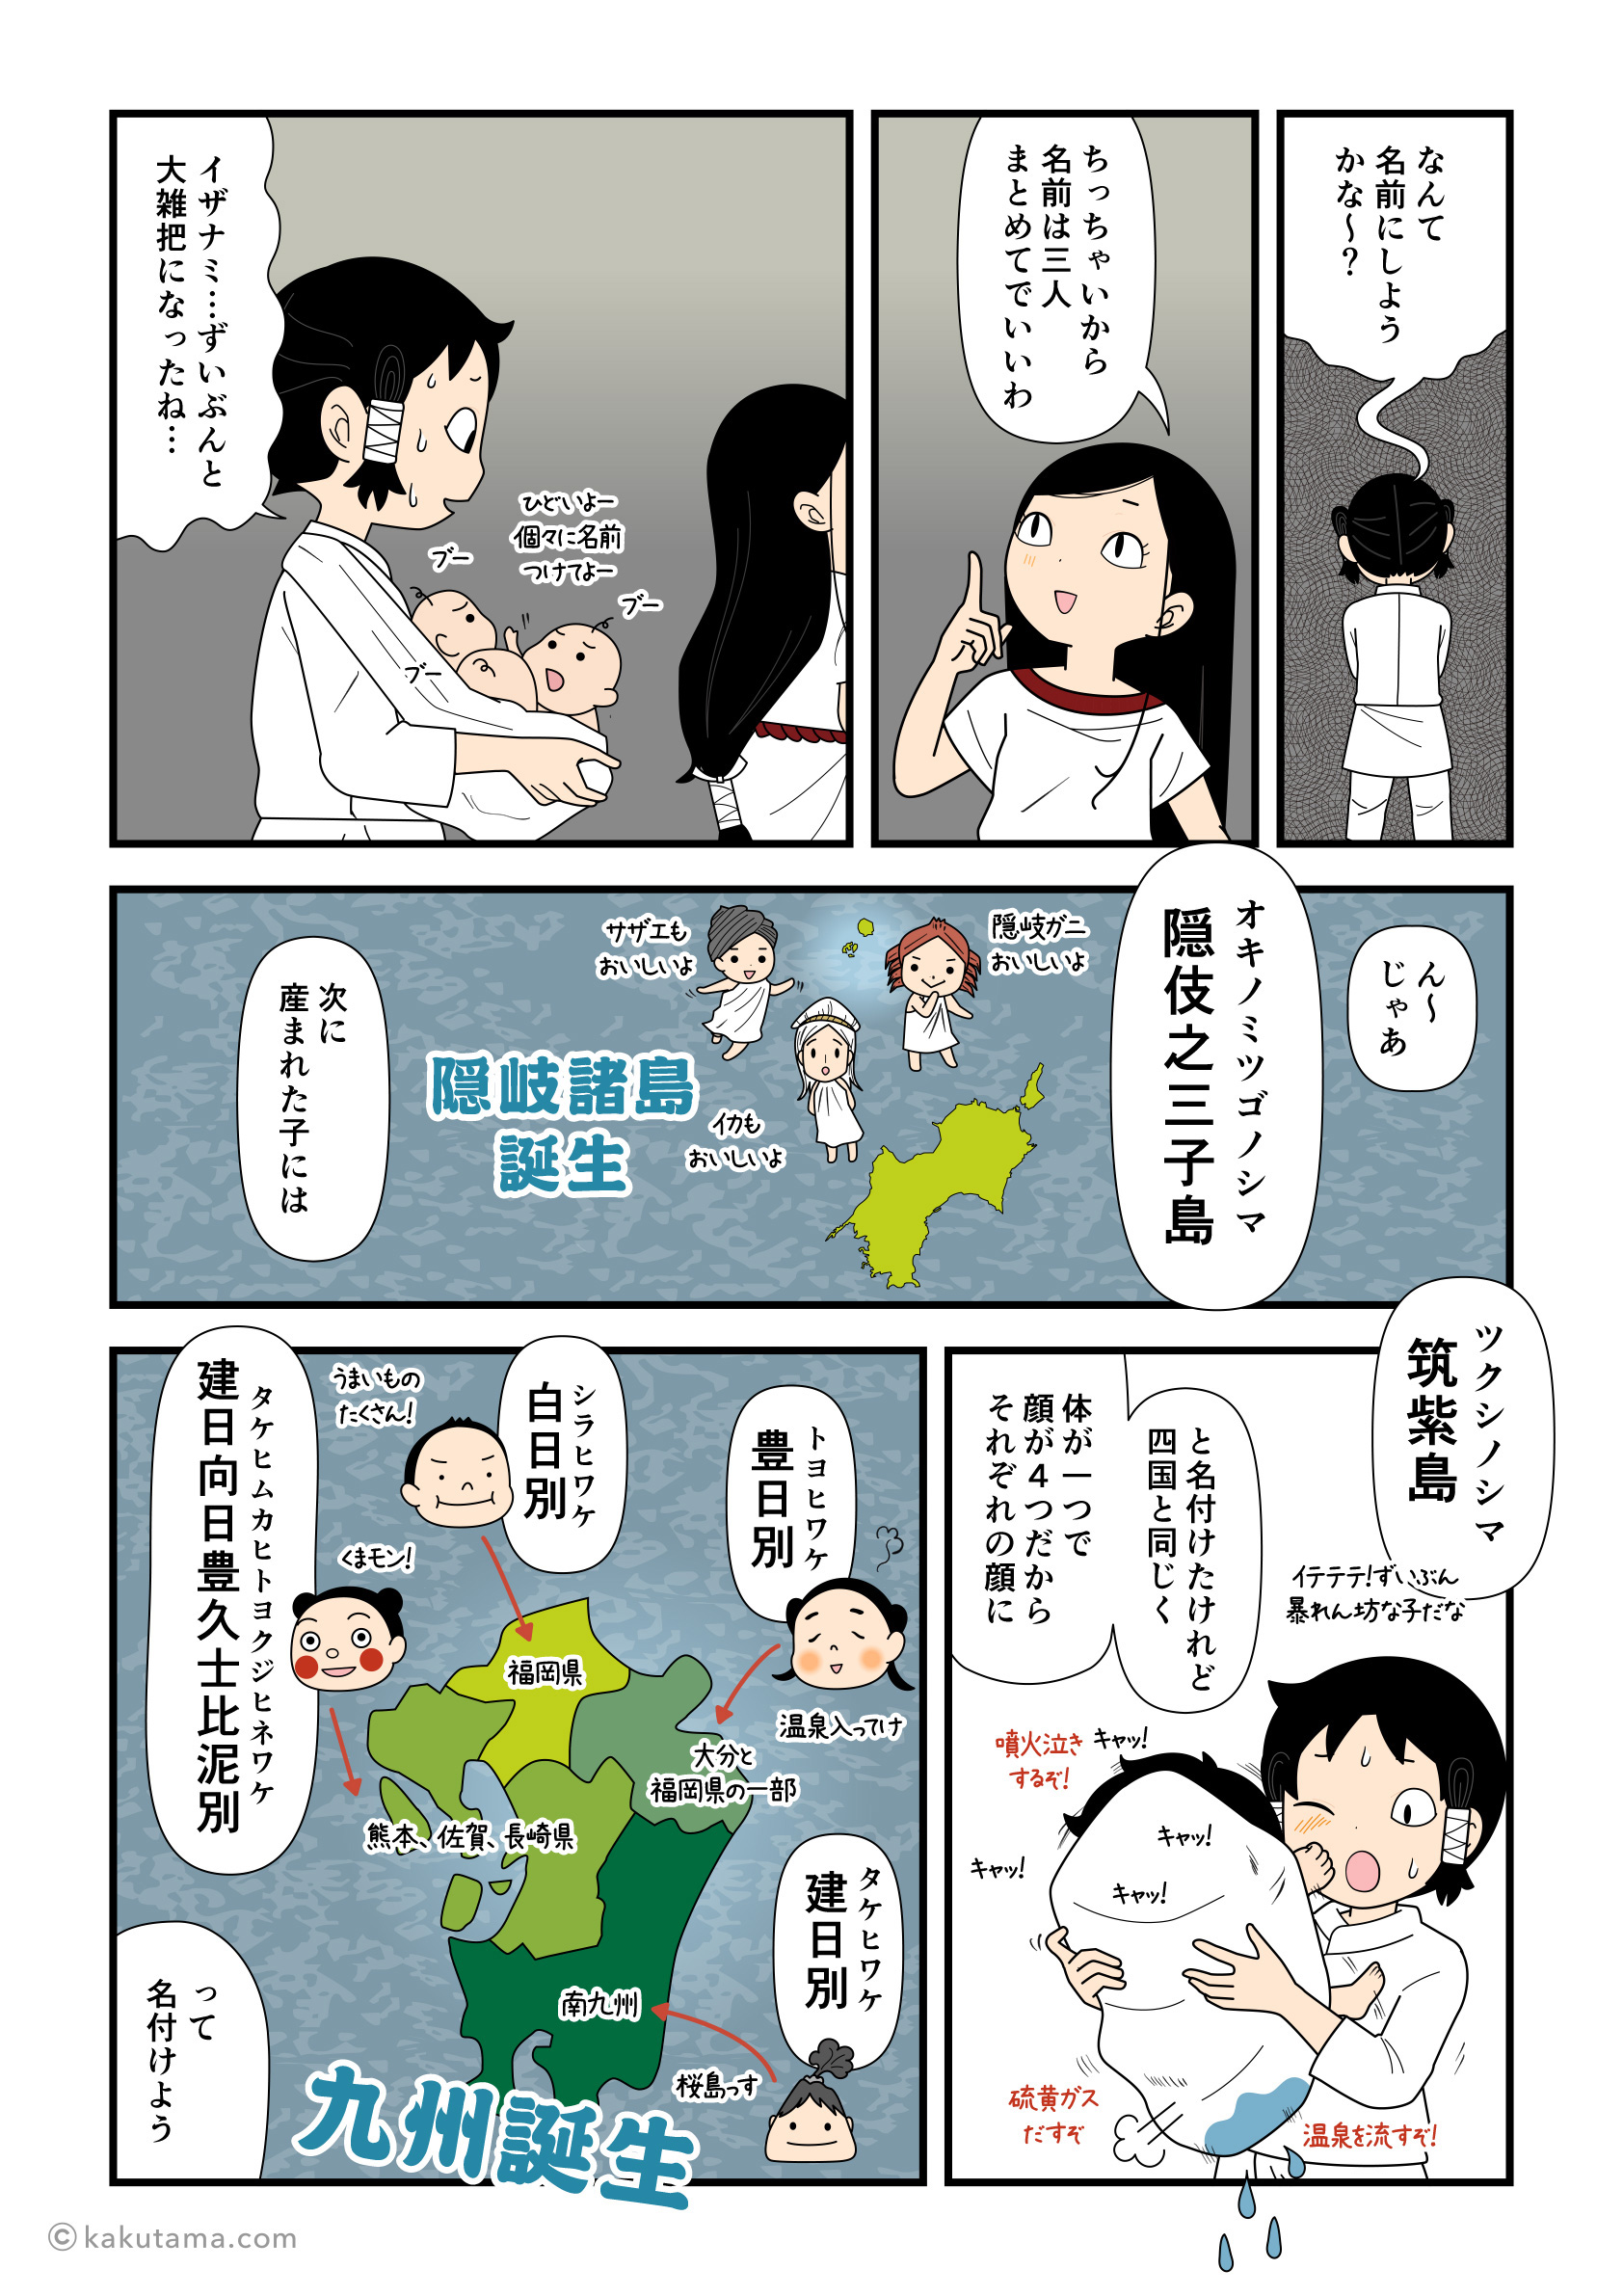 隠岐之三子島（隠岐島）に筑紫島（九州）を産んだイザナギとイザナミの漫画